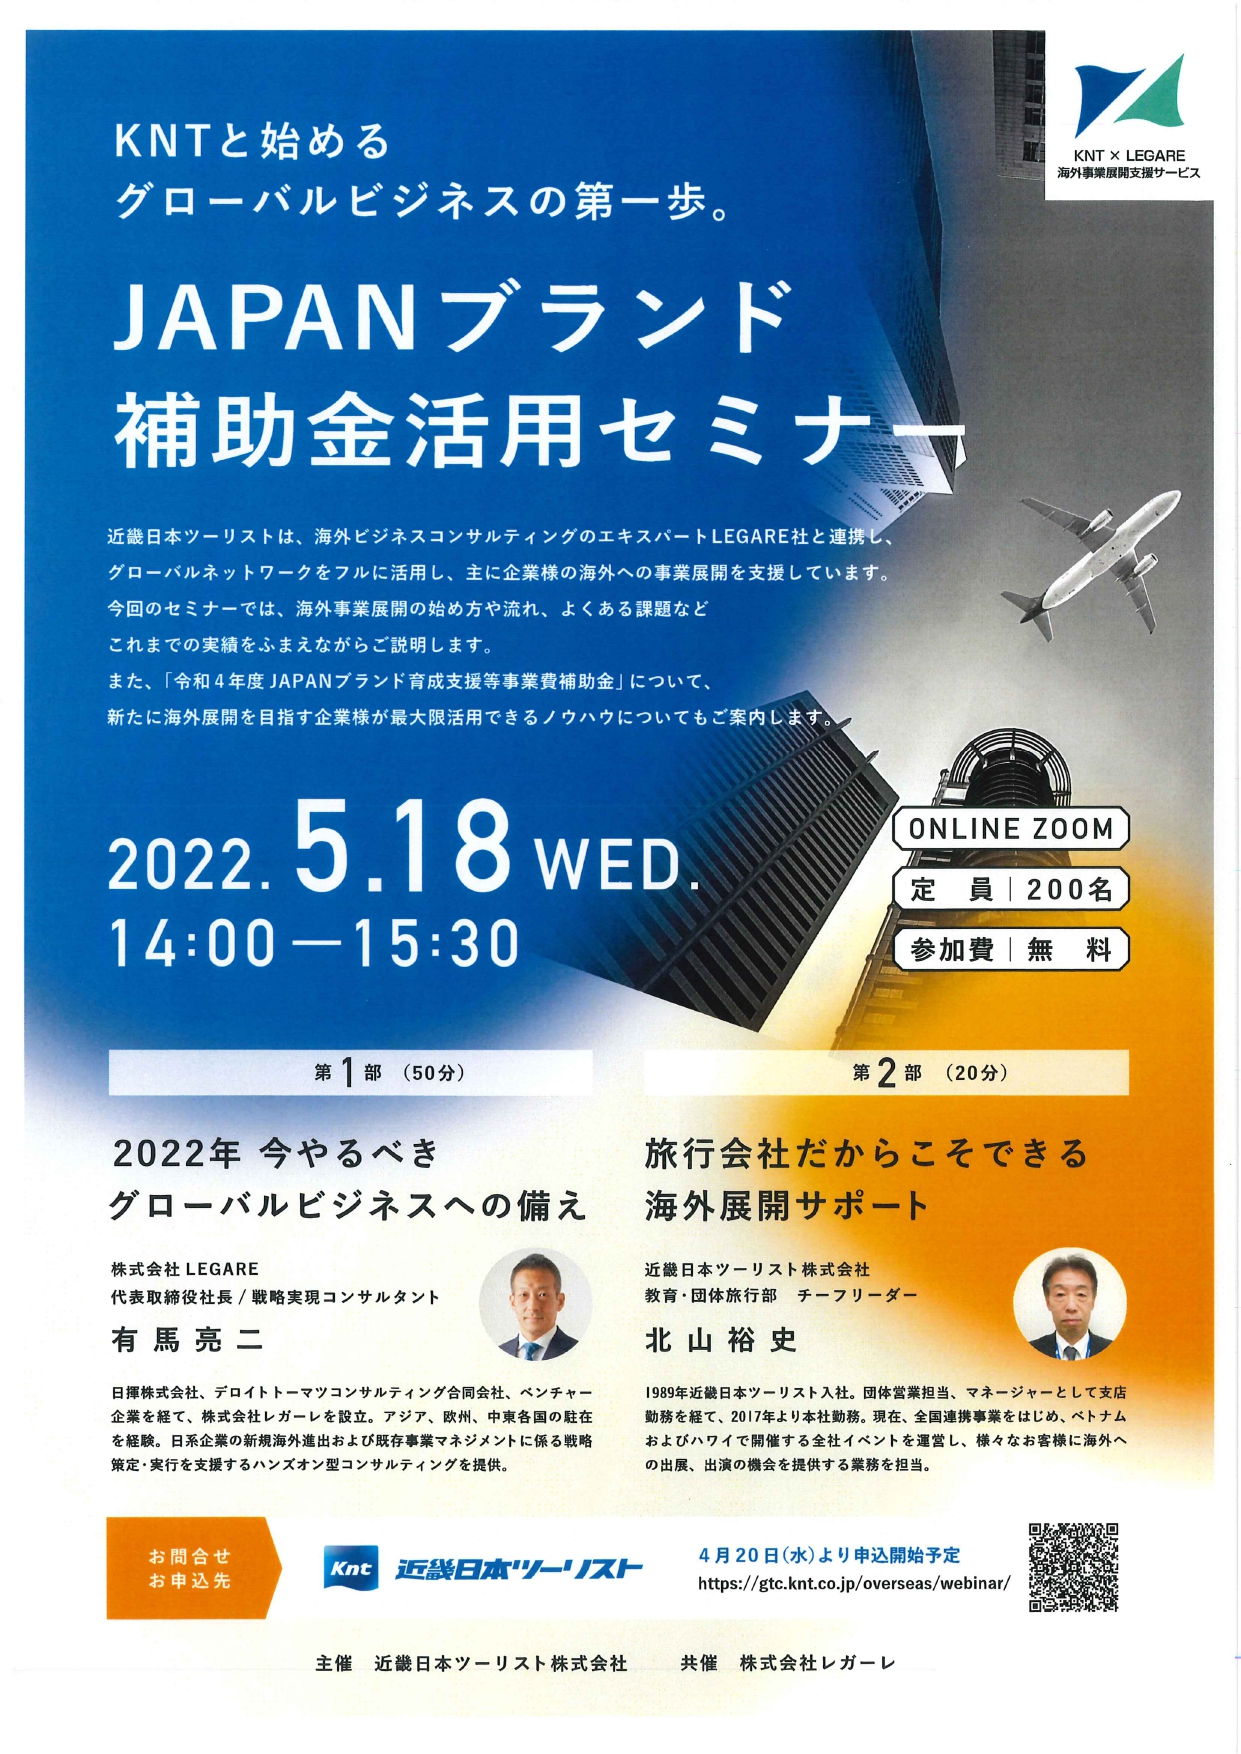 「JAPANブランド補助金活用セミナー」の開催について（ご案内）